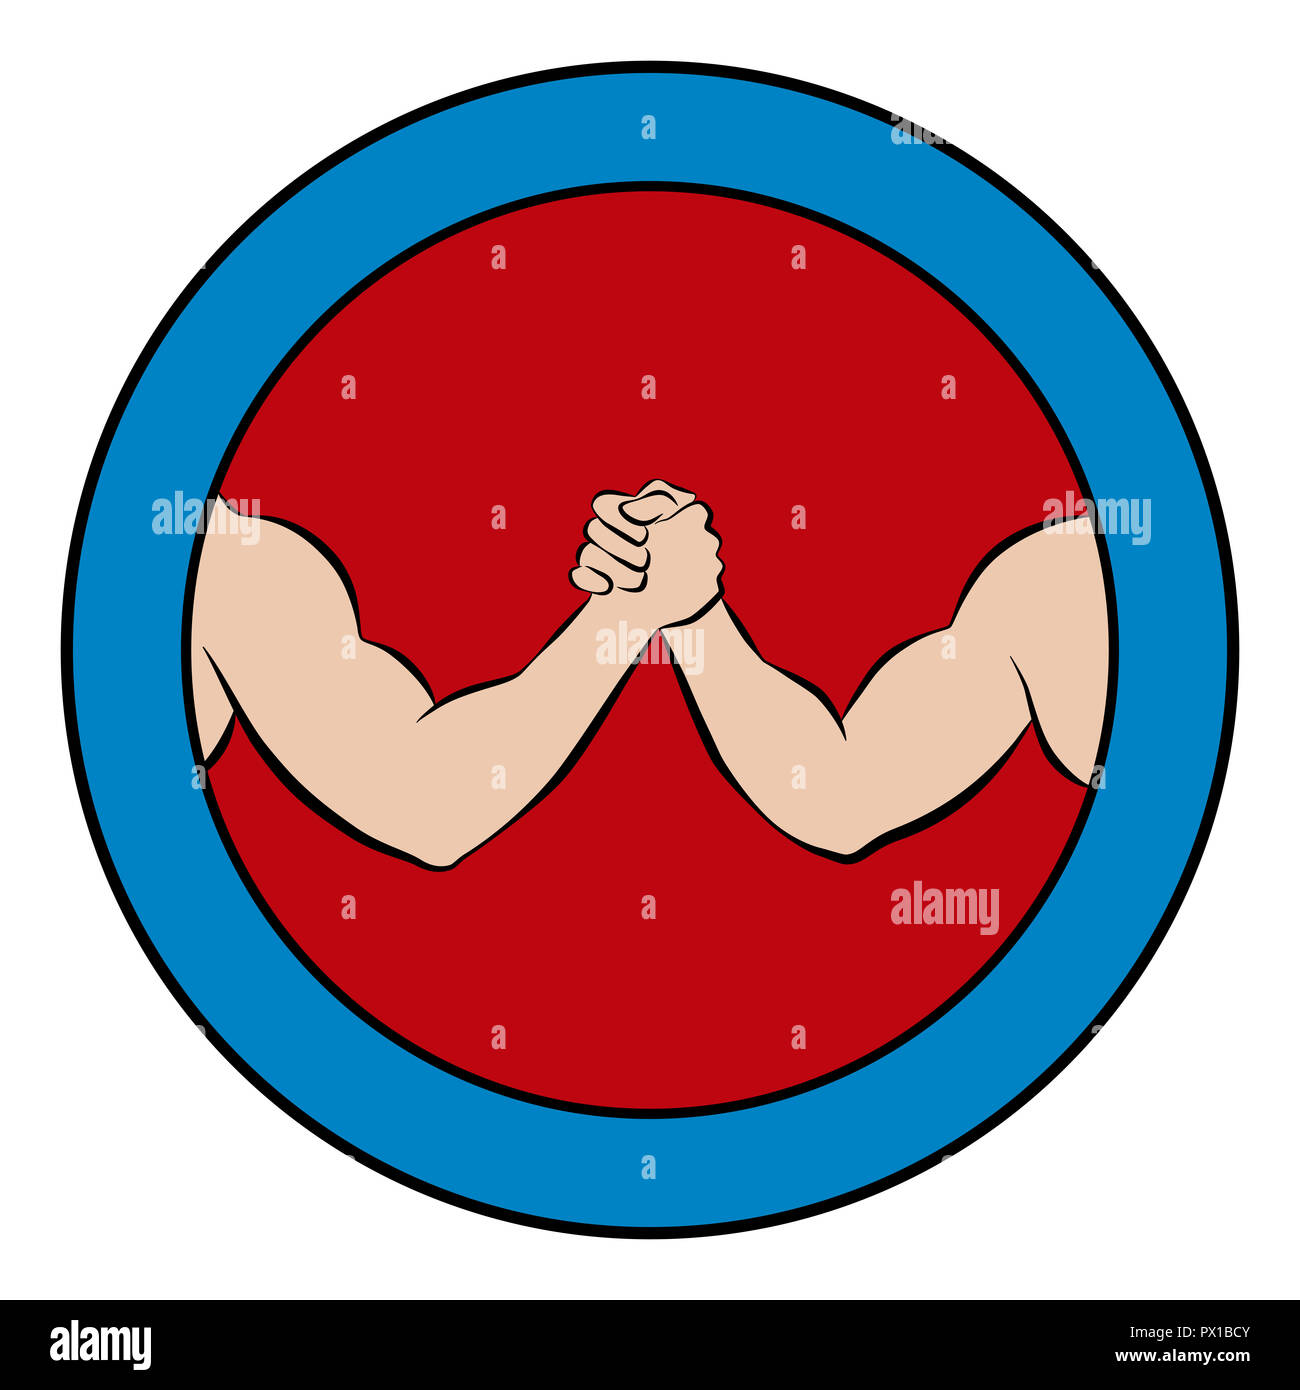 Arm wrestling logo. Pictograma redondo con centro rojo y marco azul. Ilustración de dos fuertes, musculosos brazos en la competencia. Foto de stock